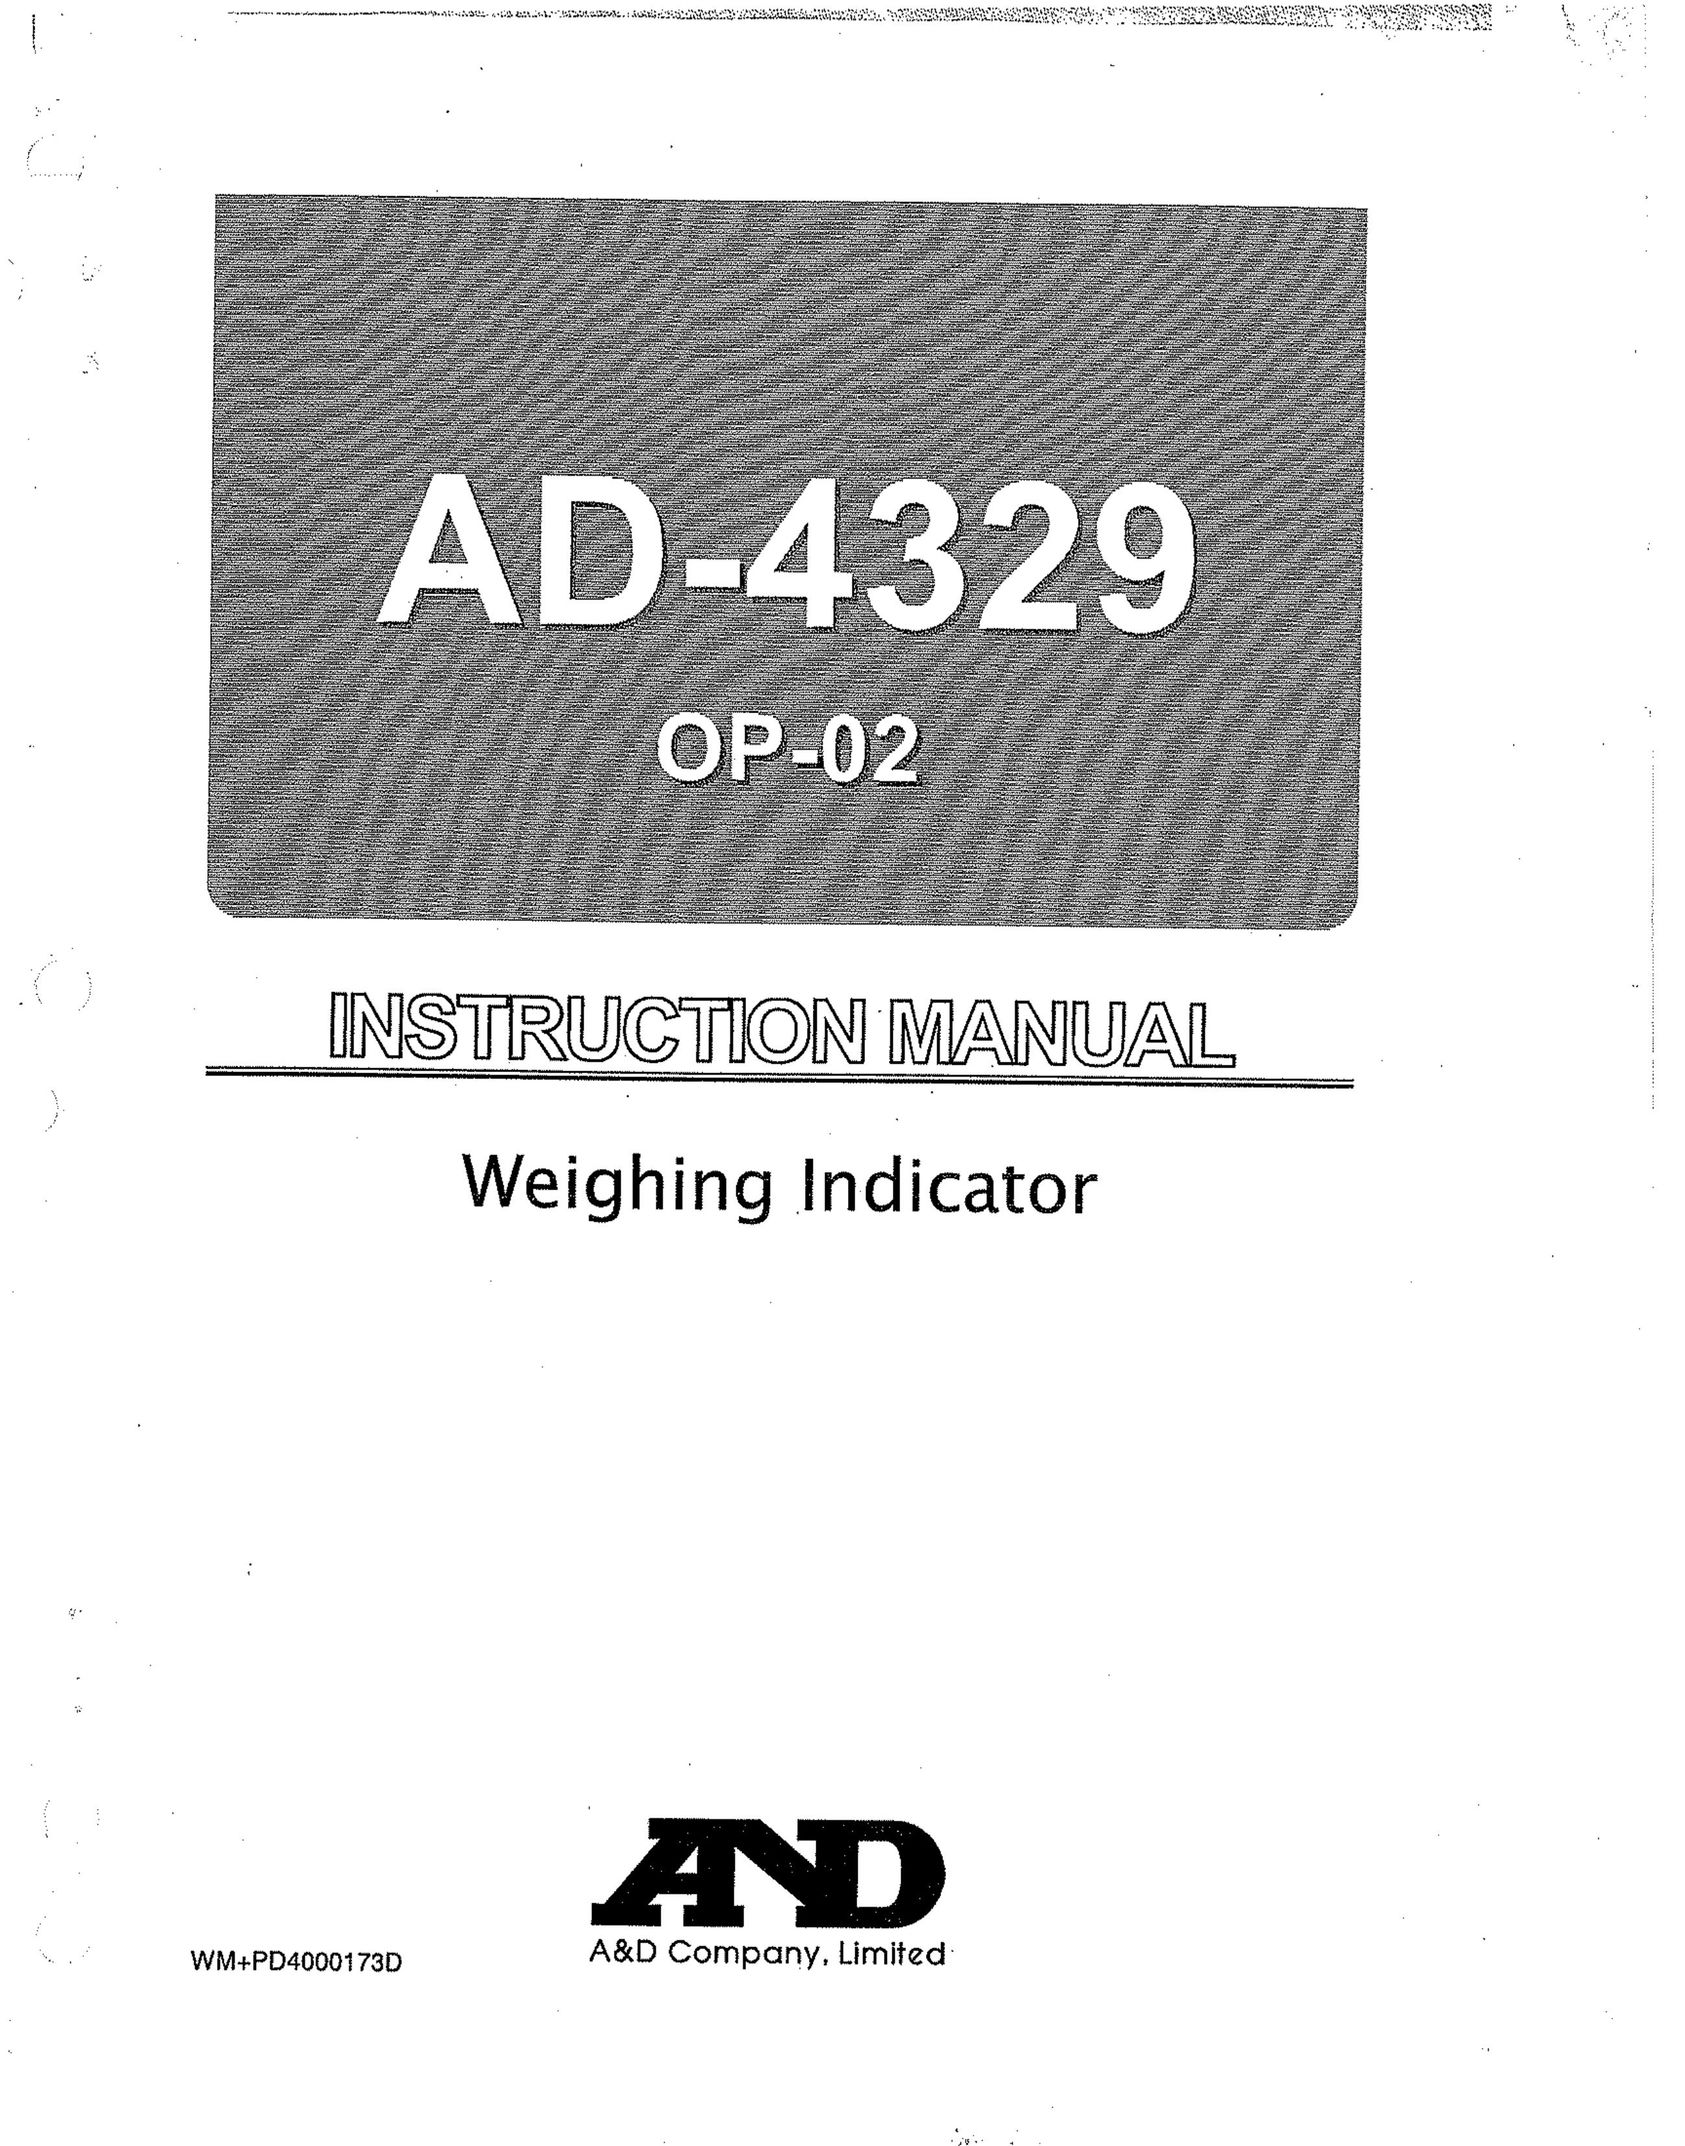 A&D AD-4329 Postal Equipment User Manual